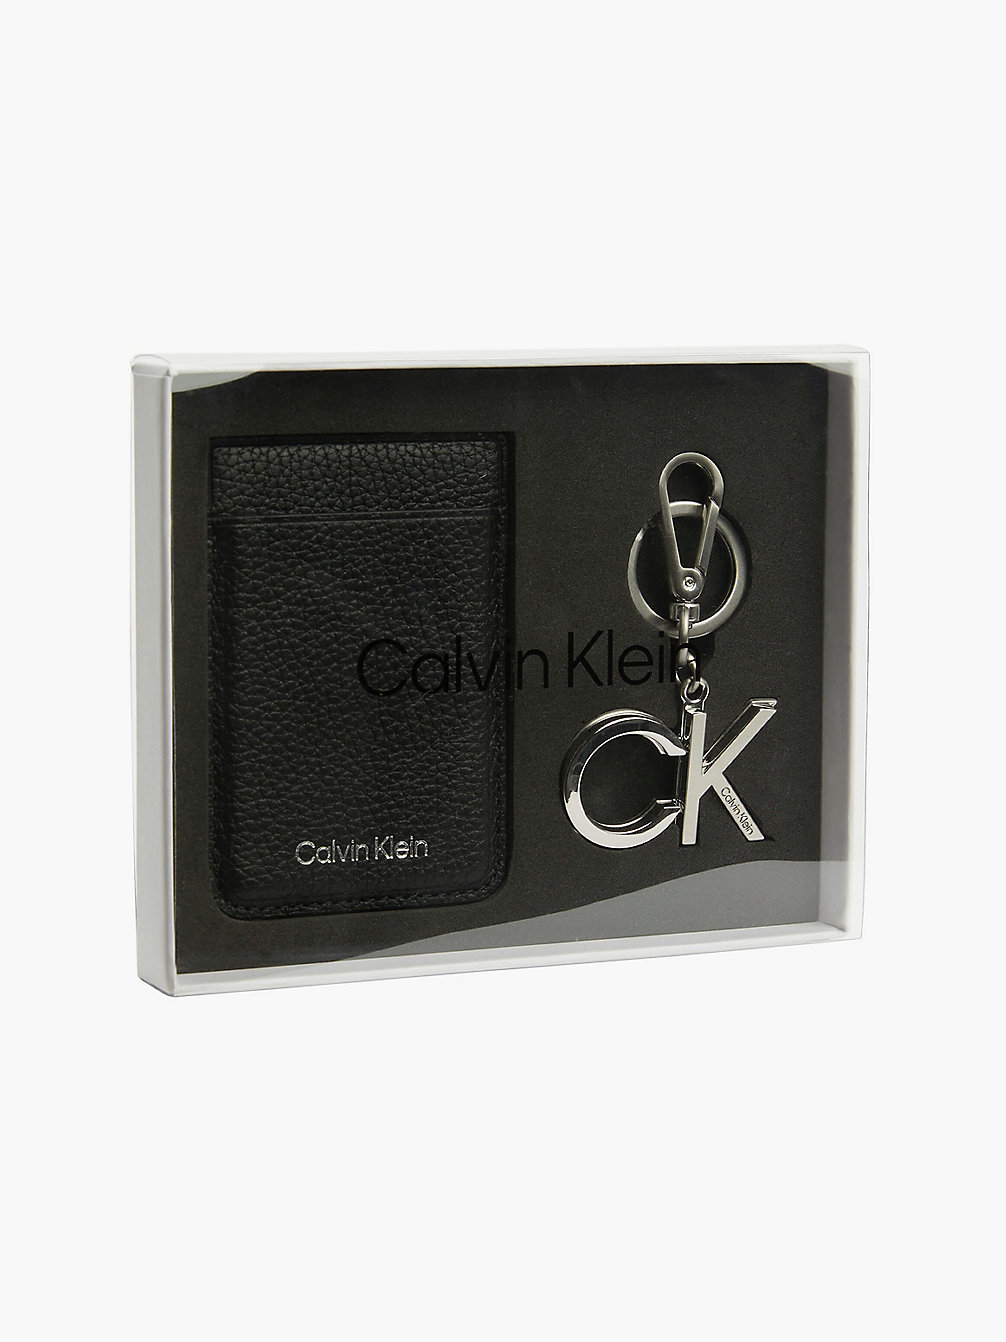 CK BLACK Leather Phone Cardholder And Keyring Gift Set undefined men Calvin Klein